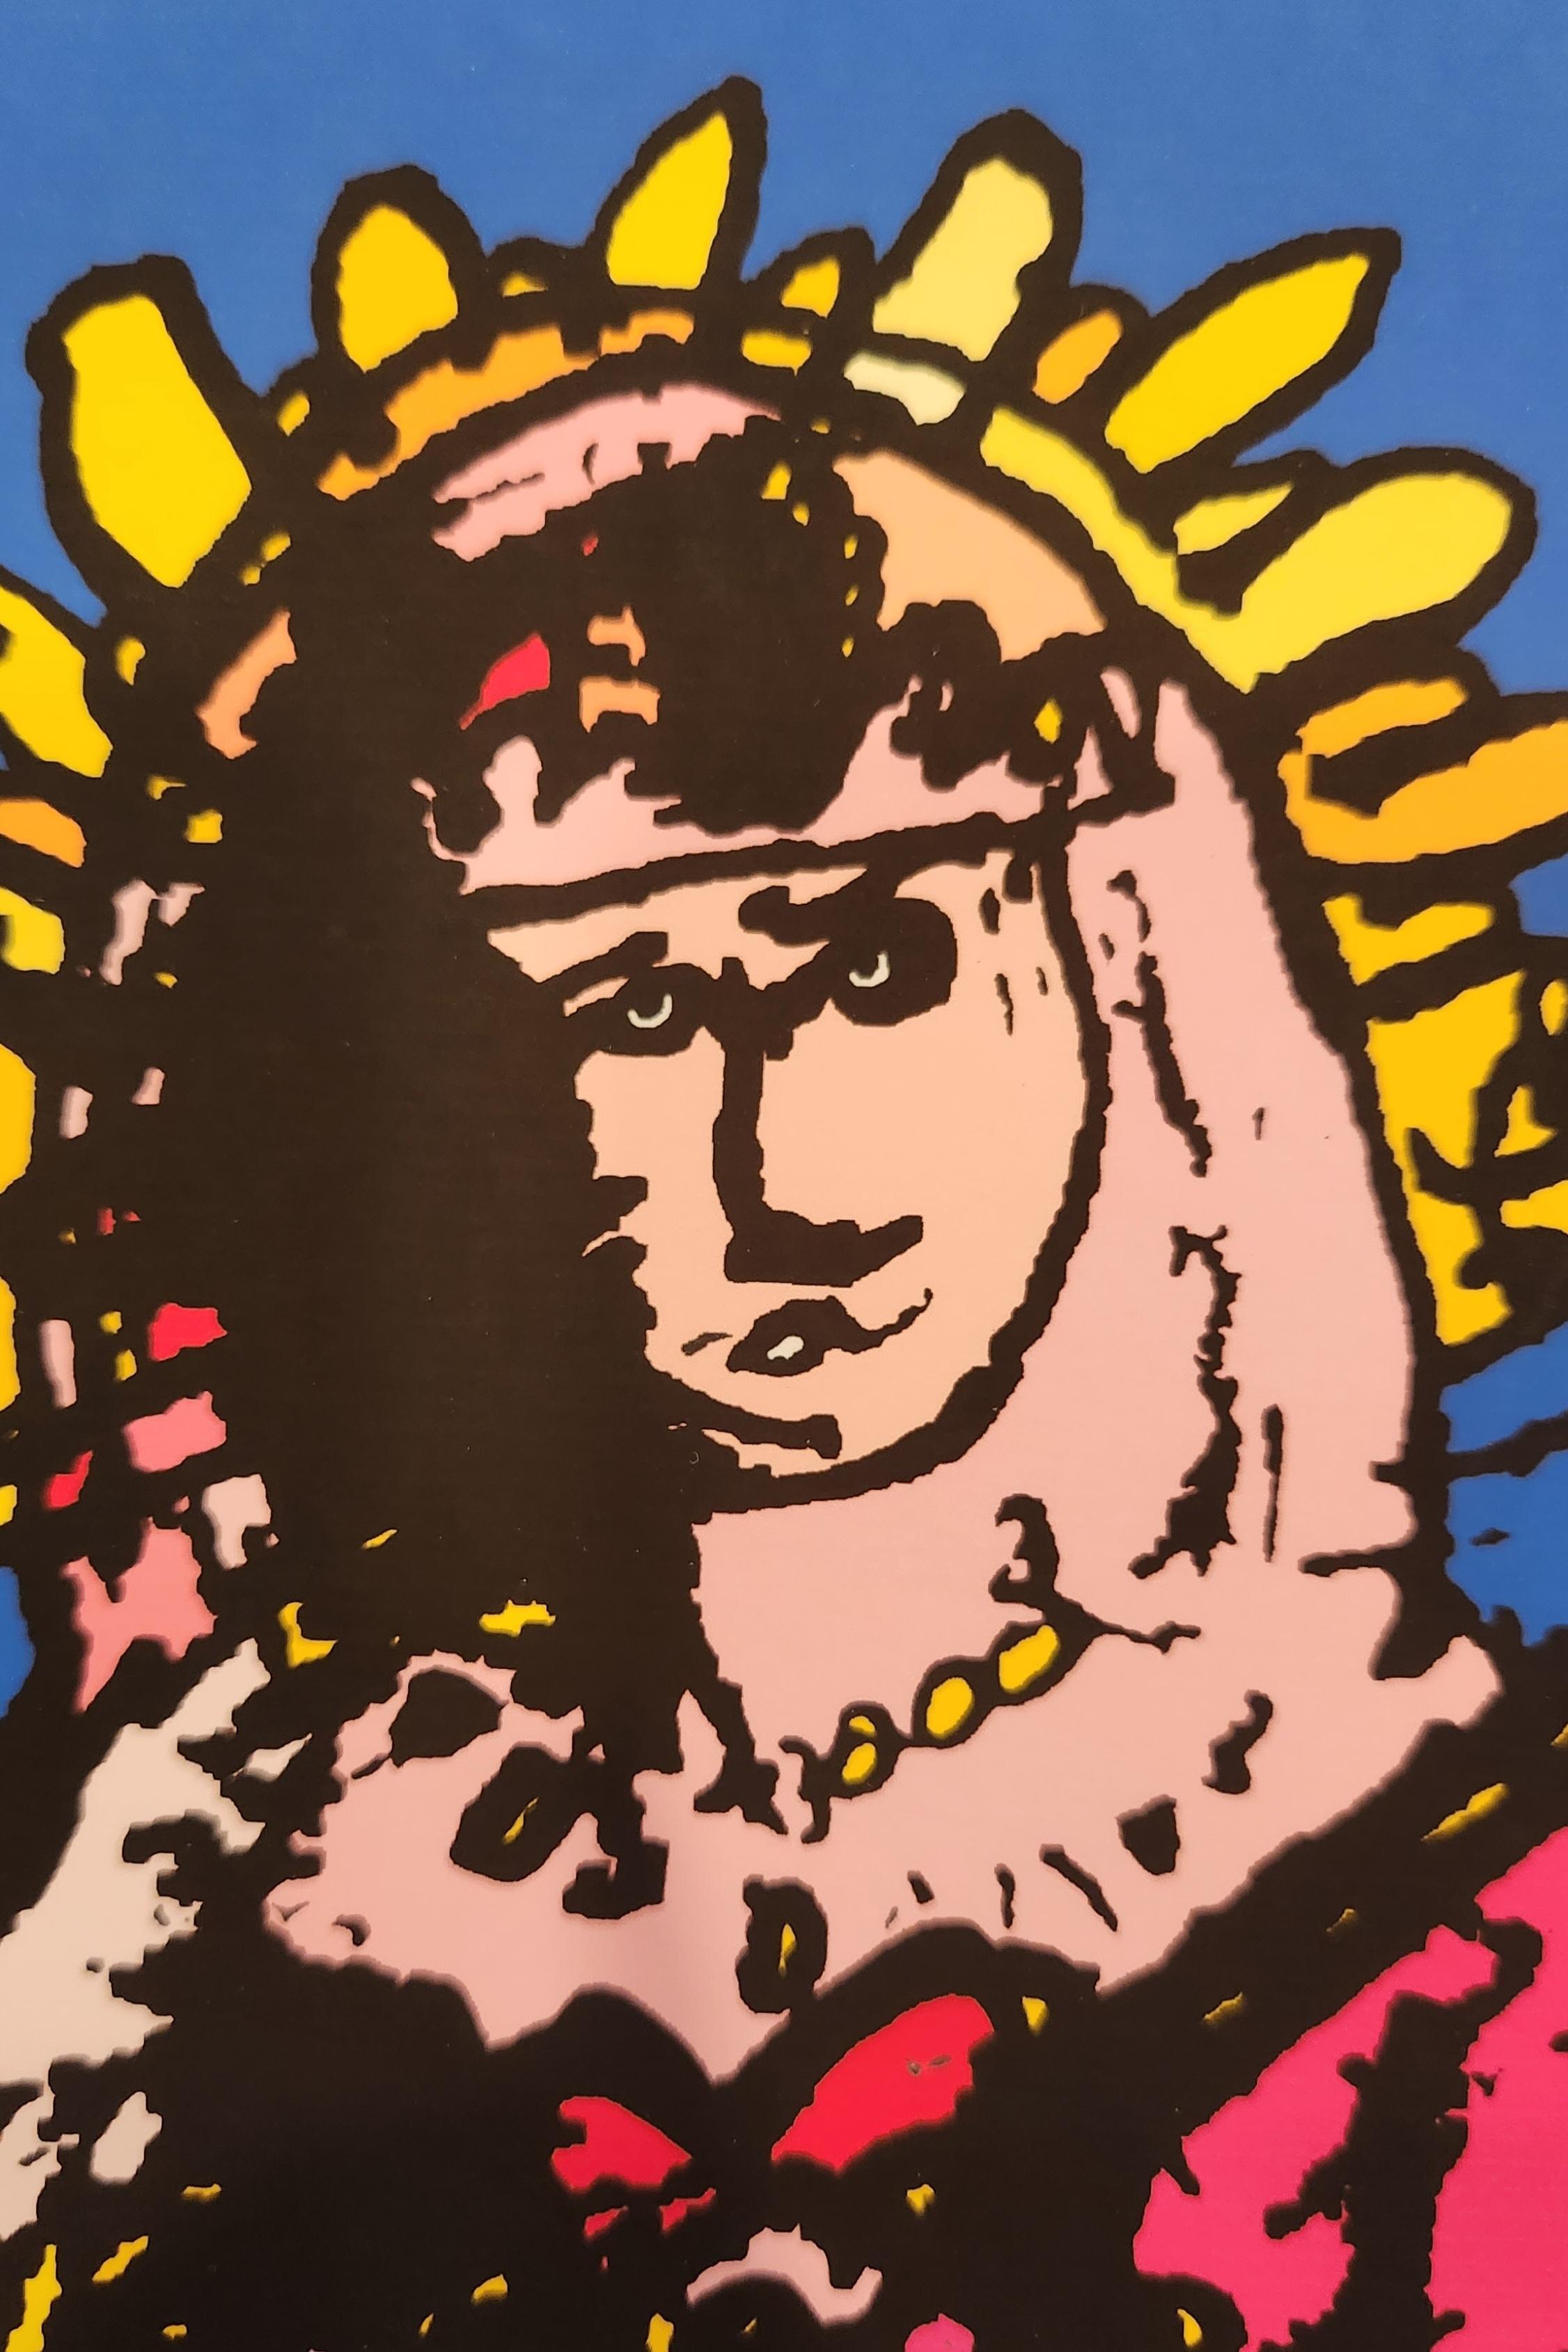 Cette lithographie représente un portrait de la Vierge entouré d'éléments caribéens. Ce travail baroque de la couleur avec des roses, des jaunes et des oranges vifs dans le sujet crée un merveilleux contraste avec le bleu audacieux de